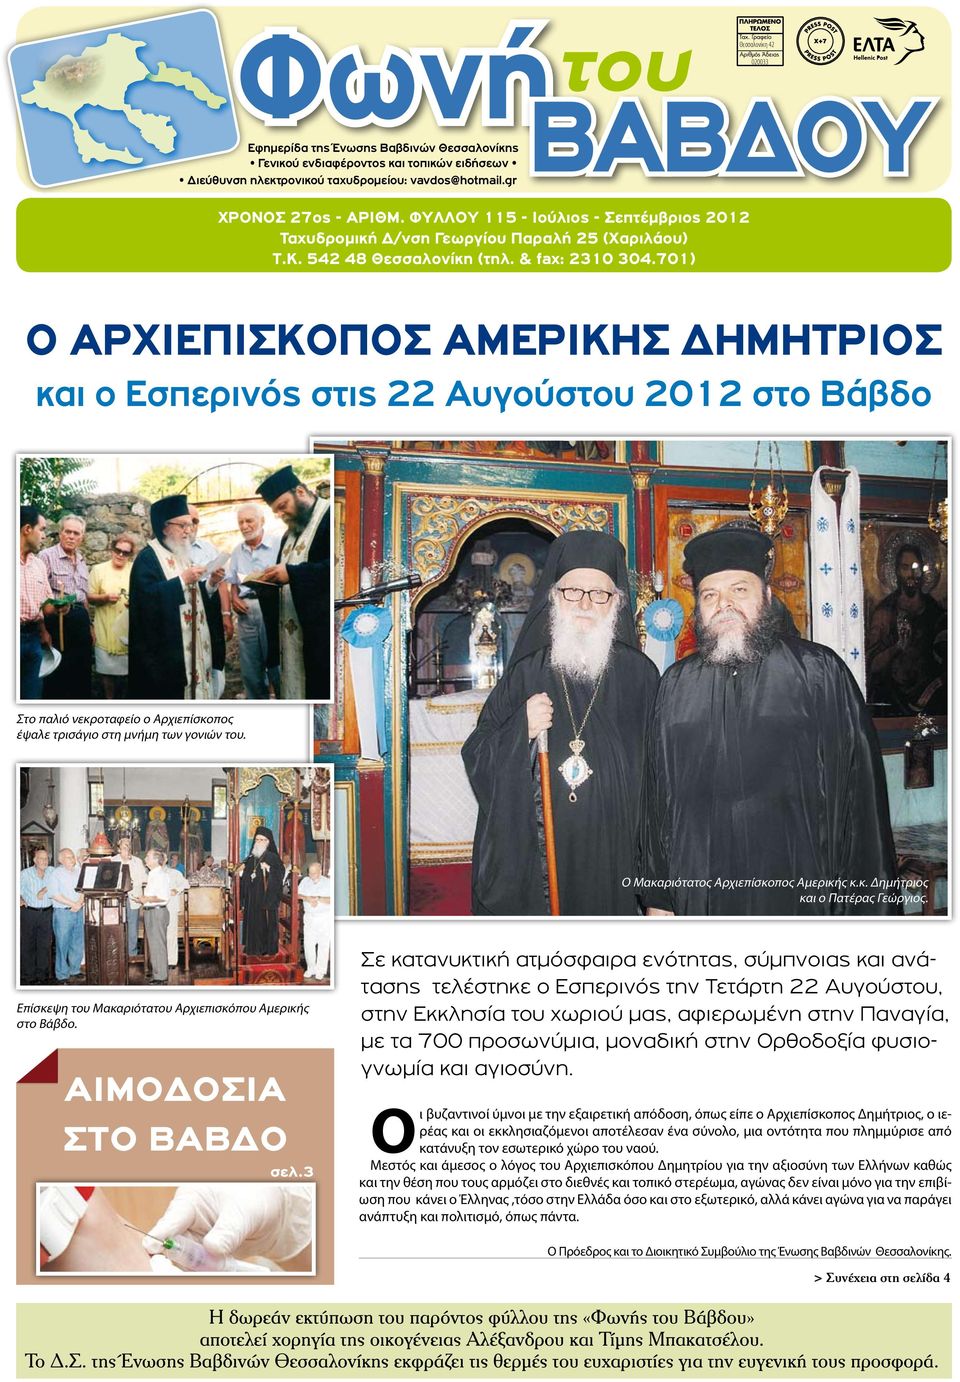 701) Ο ΑΡΧΙΕΠΙΣΚΟΠΟΣ ΑΜΕΡΙΚΗΣ ΔΗΜΗΤΡΙΟΣ και ο Εσπερινός στις 22 Αυγούστου 2012 στο Βάβδο Στο παλιό νεκροταφείο ο Αρχιεπίσκοπος έψαλε τρισάγιο στη μνήμη των γονιών του.